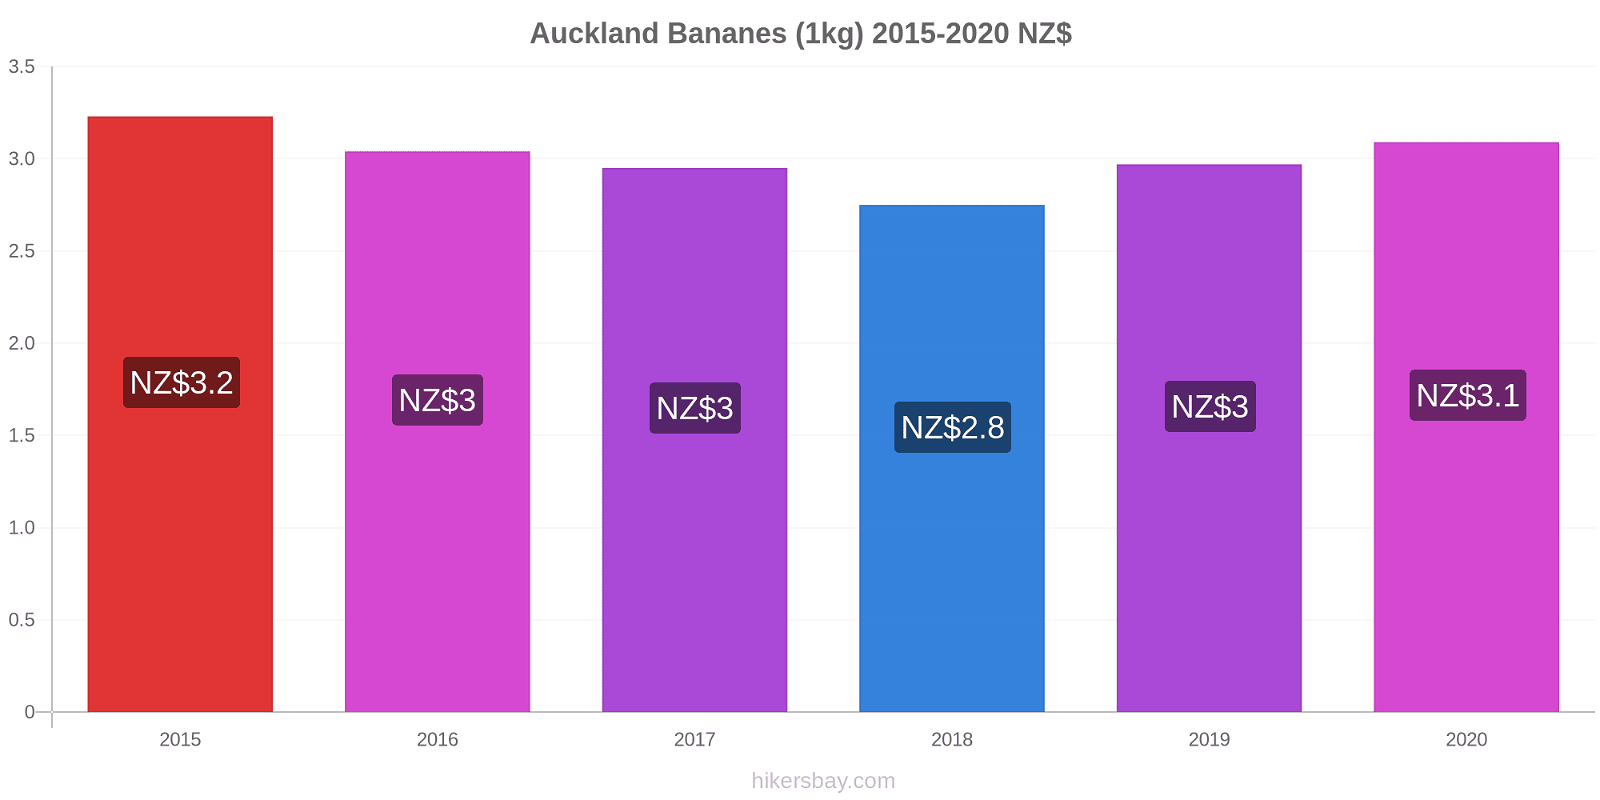 Auckland changements de prix Bananes (1kg) hikersbay.com